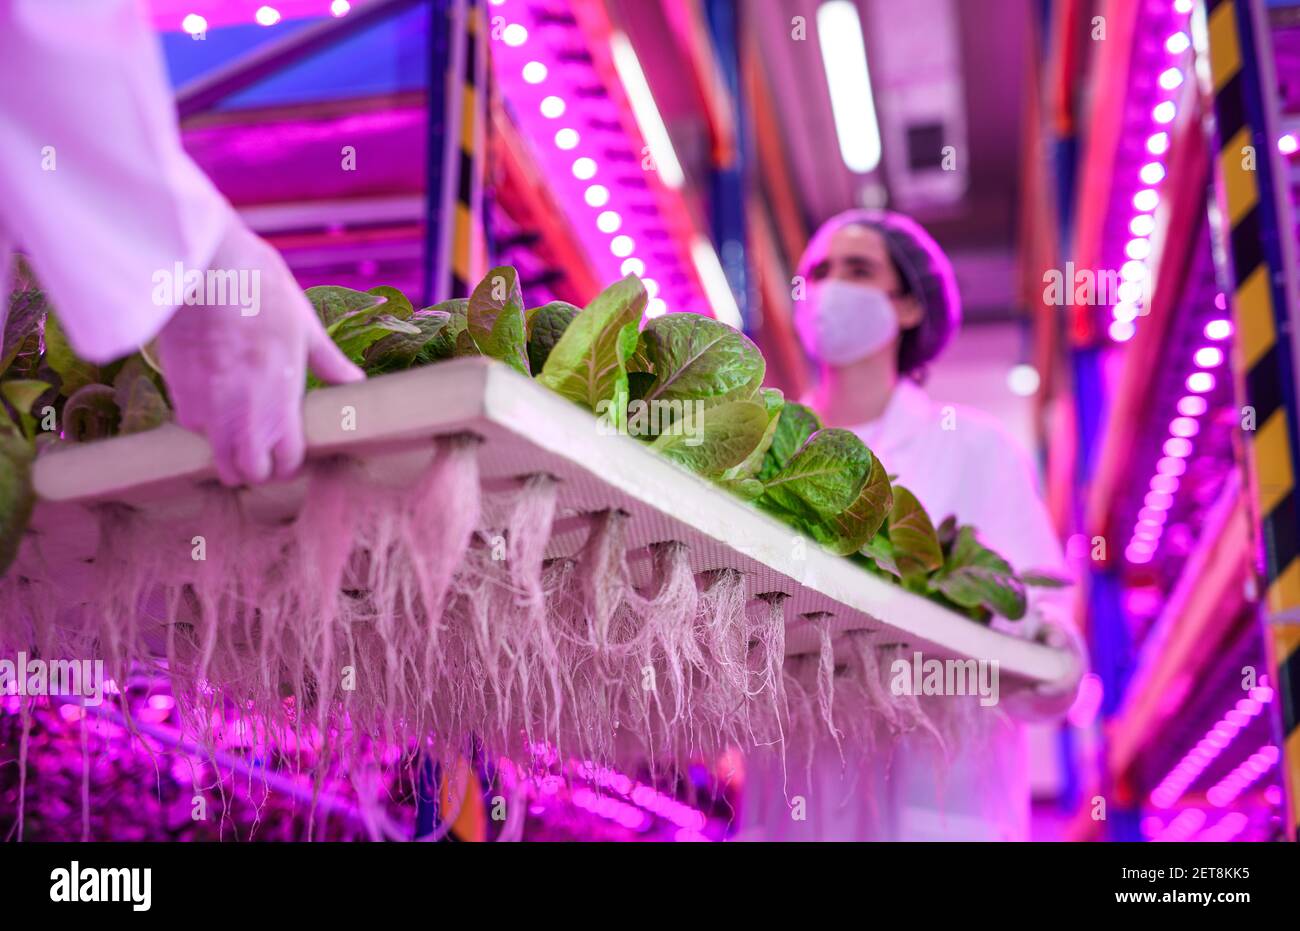 Trabajadores con máscara facial en granja aquapónica, negocios sostenibles y coronavirus. Foto de stock